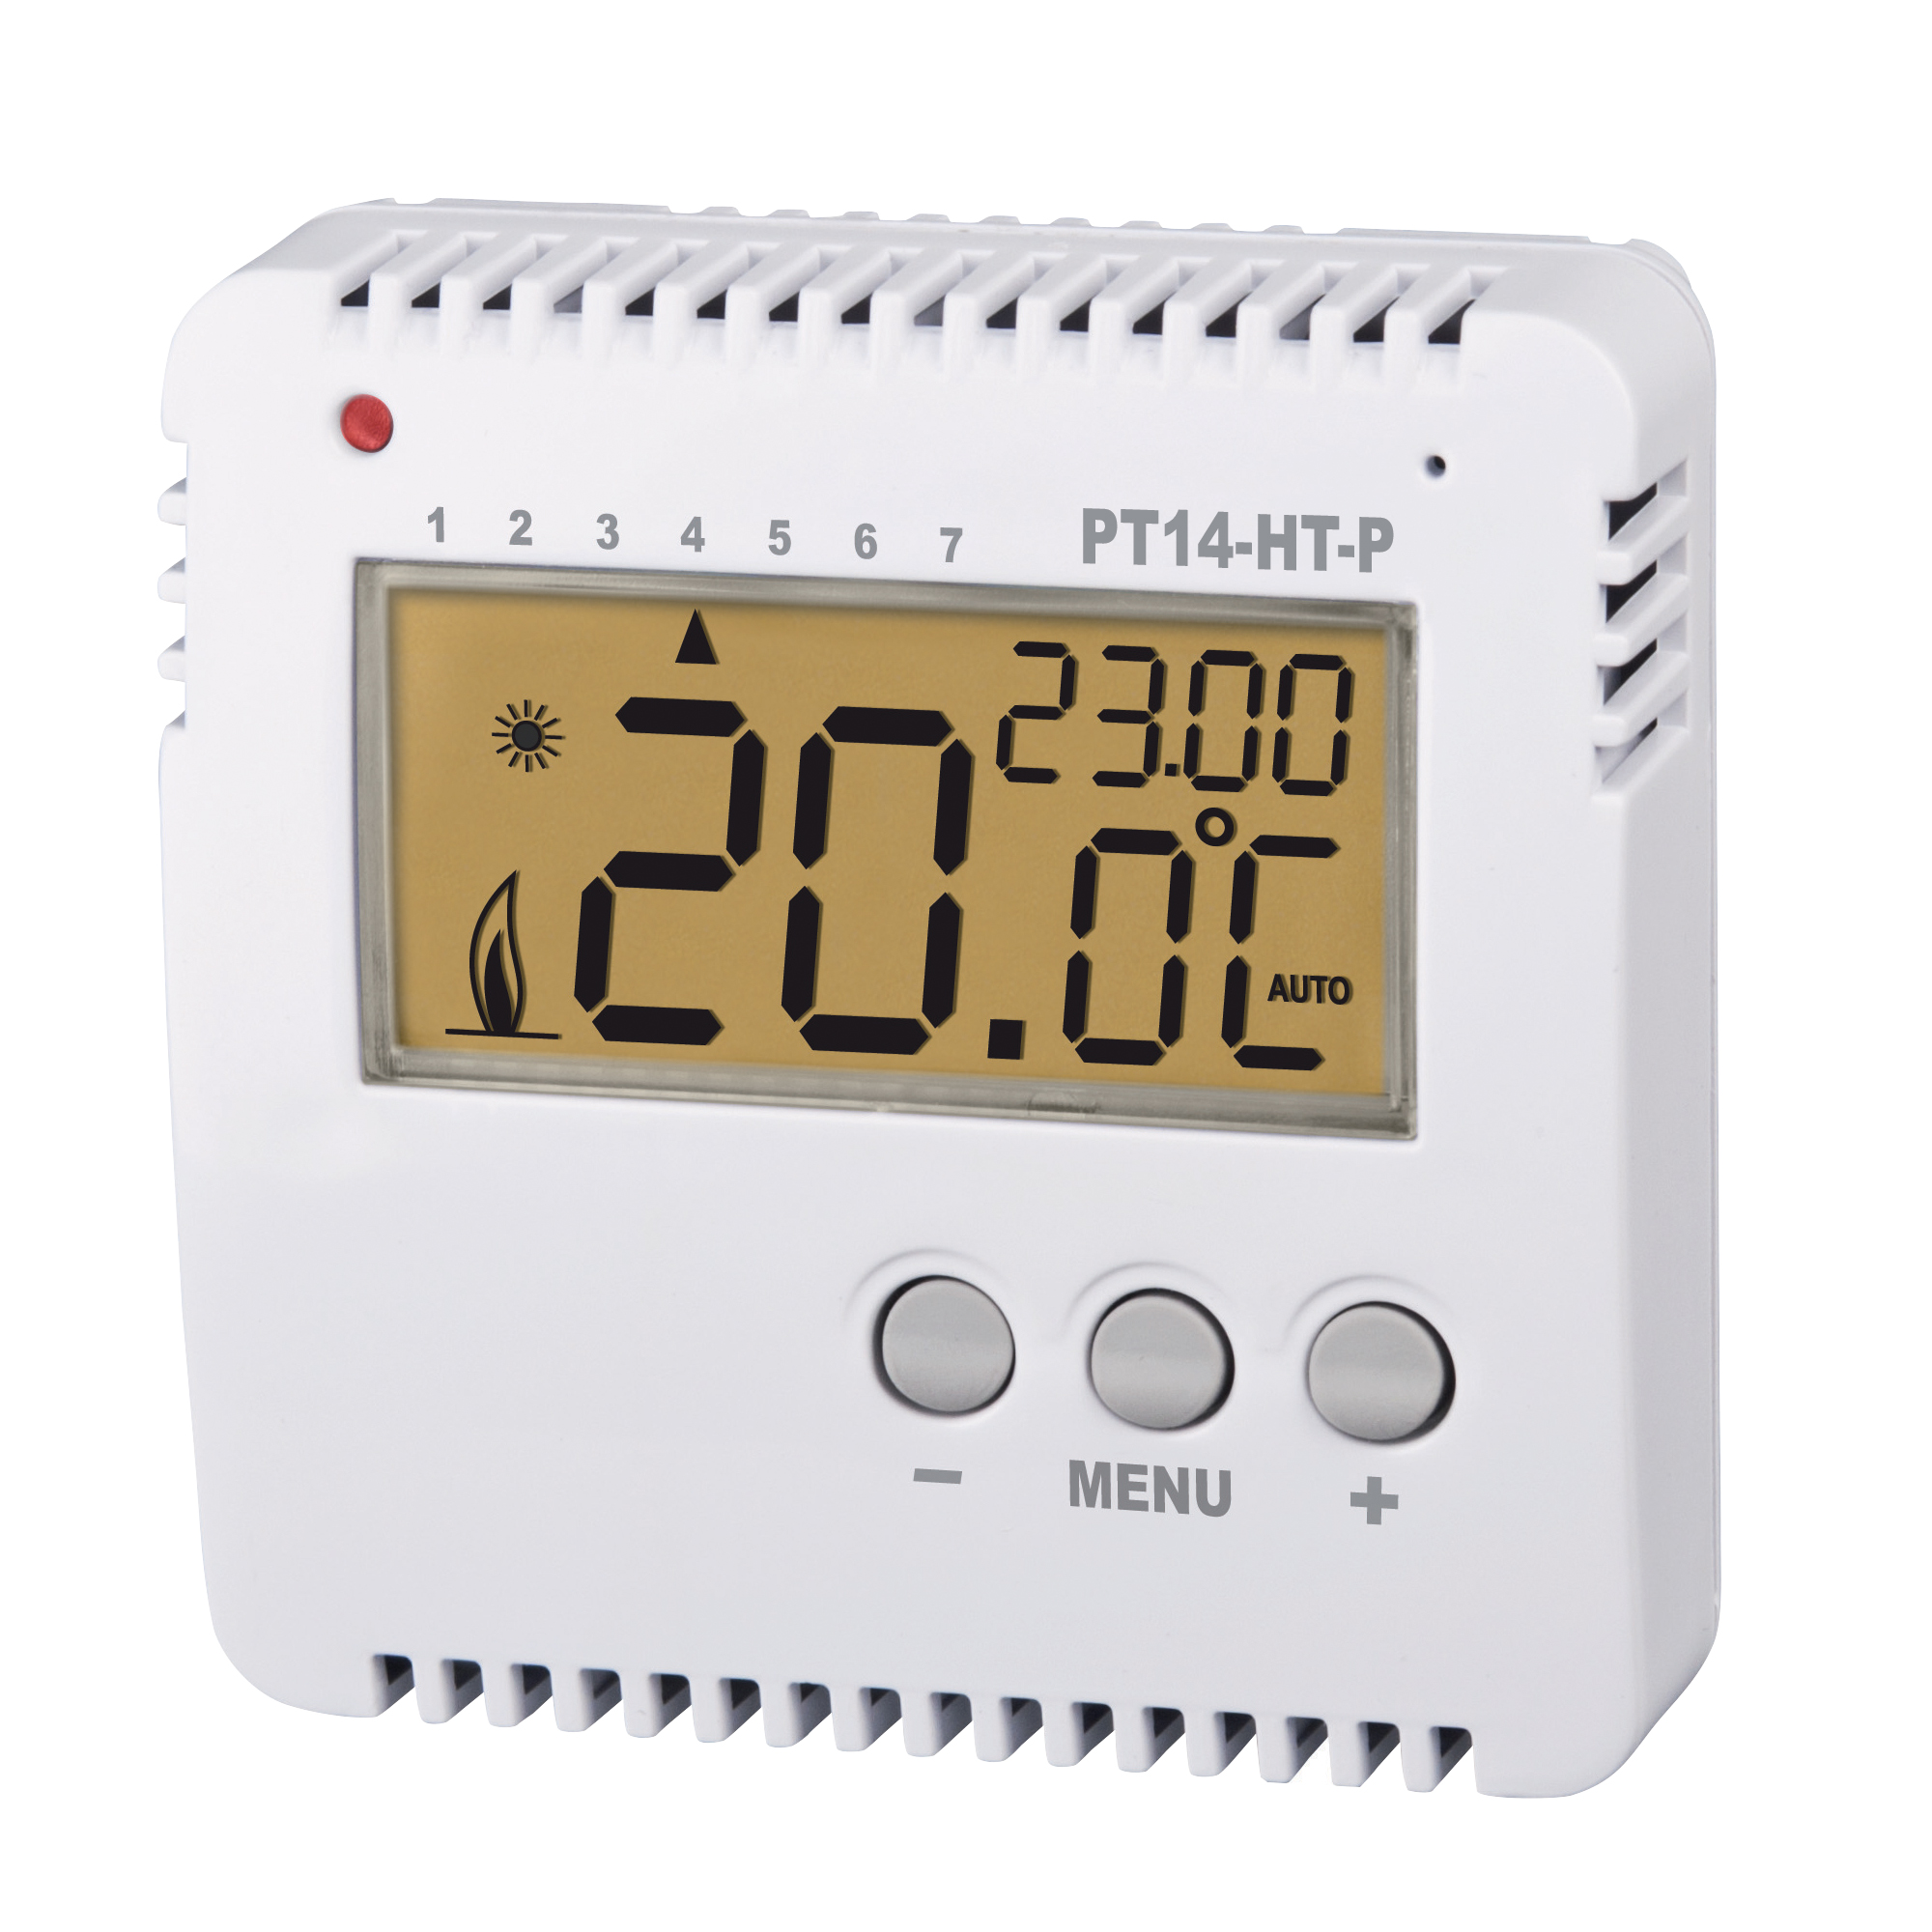 ELEKTROBOCK Programovatelný termostat pro el. pohony PT14-HT-P